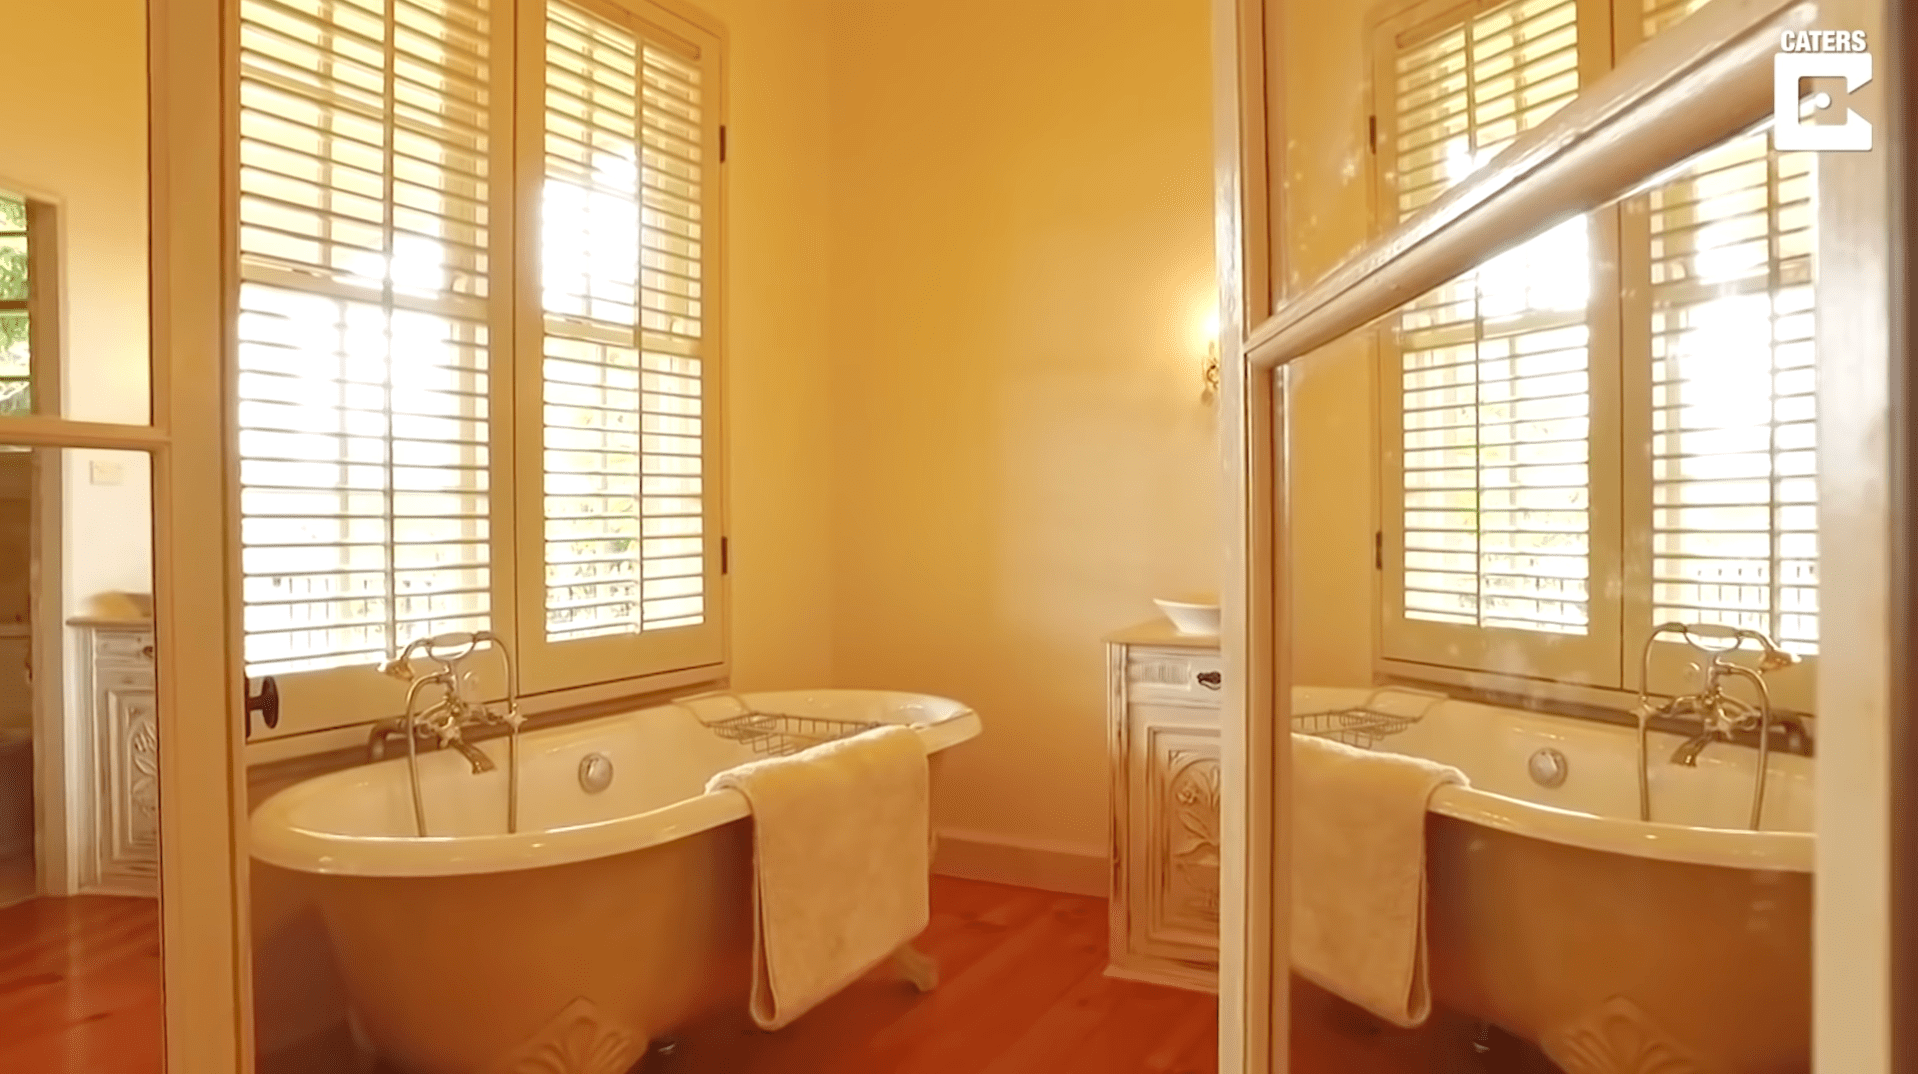 Uno de los baños privados de la casa. | Foto: YouTube/Caters Clips